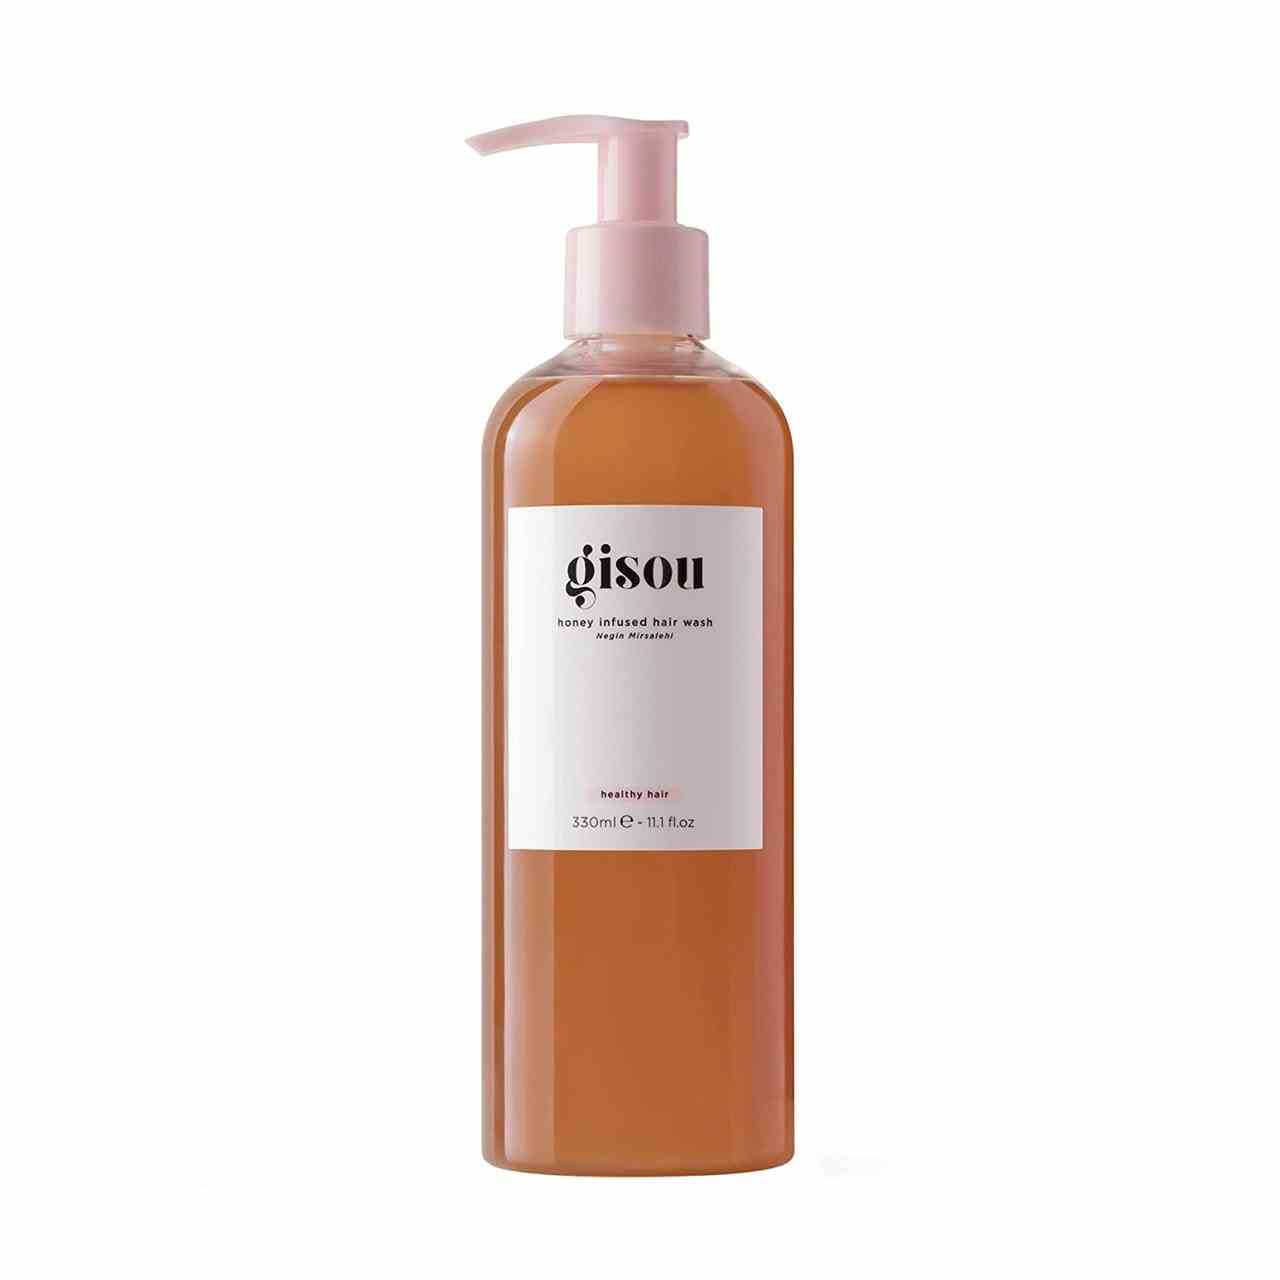 Gisou Honey-Infused Hair Wash Flasche bernsteinfarbenes Shampoo mit weißem Etikett und rosafarbener Pumpe auf weißem Hintergrund